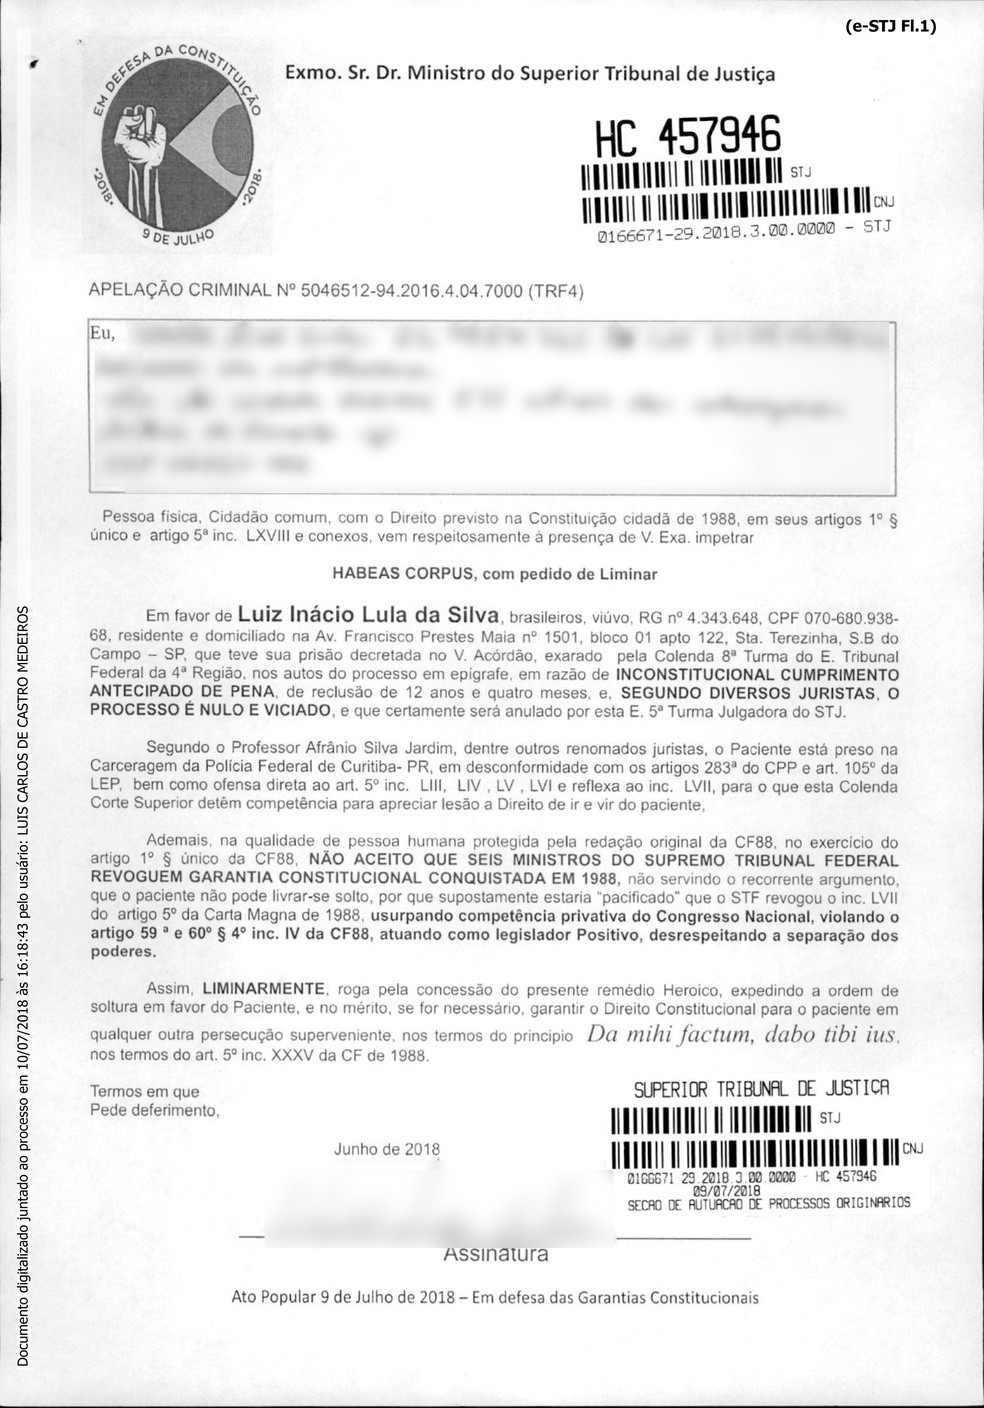 Reprodução de formulário-padrão utilizado por cidadão para impetrar habeas corpus em favor do ex-presidente Luiz Inácio Lula da Silva (Foto: Reprodução)